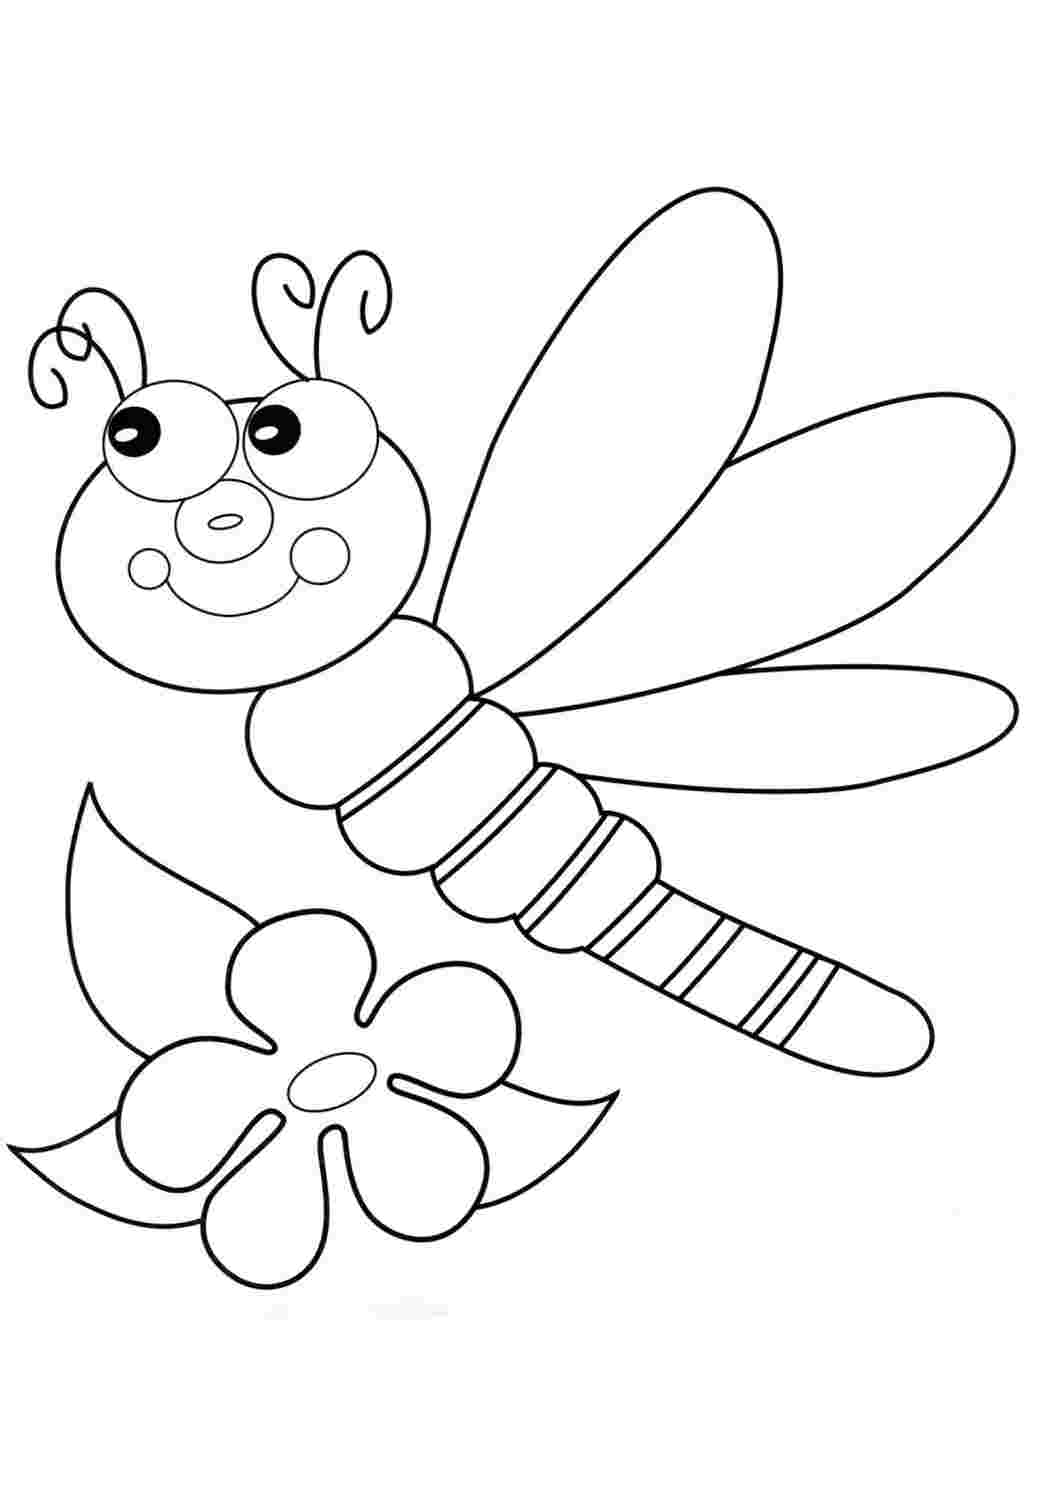 Раскраски насекомых для детей — Распечатайте бесплатно!